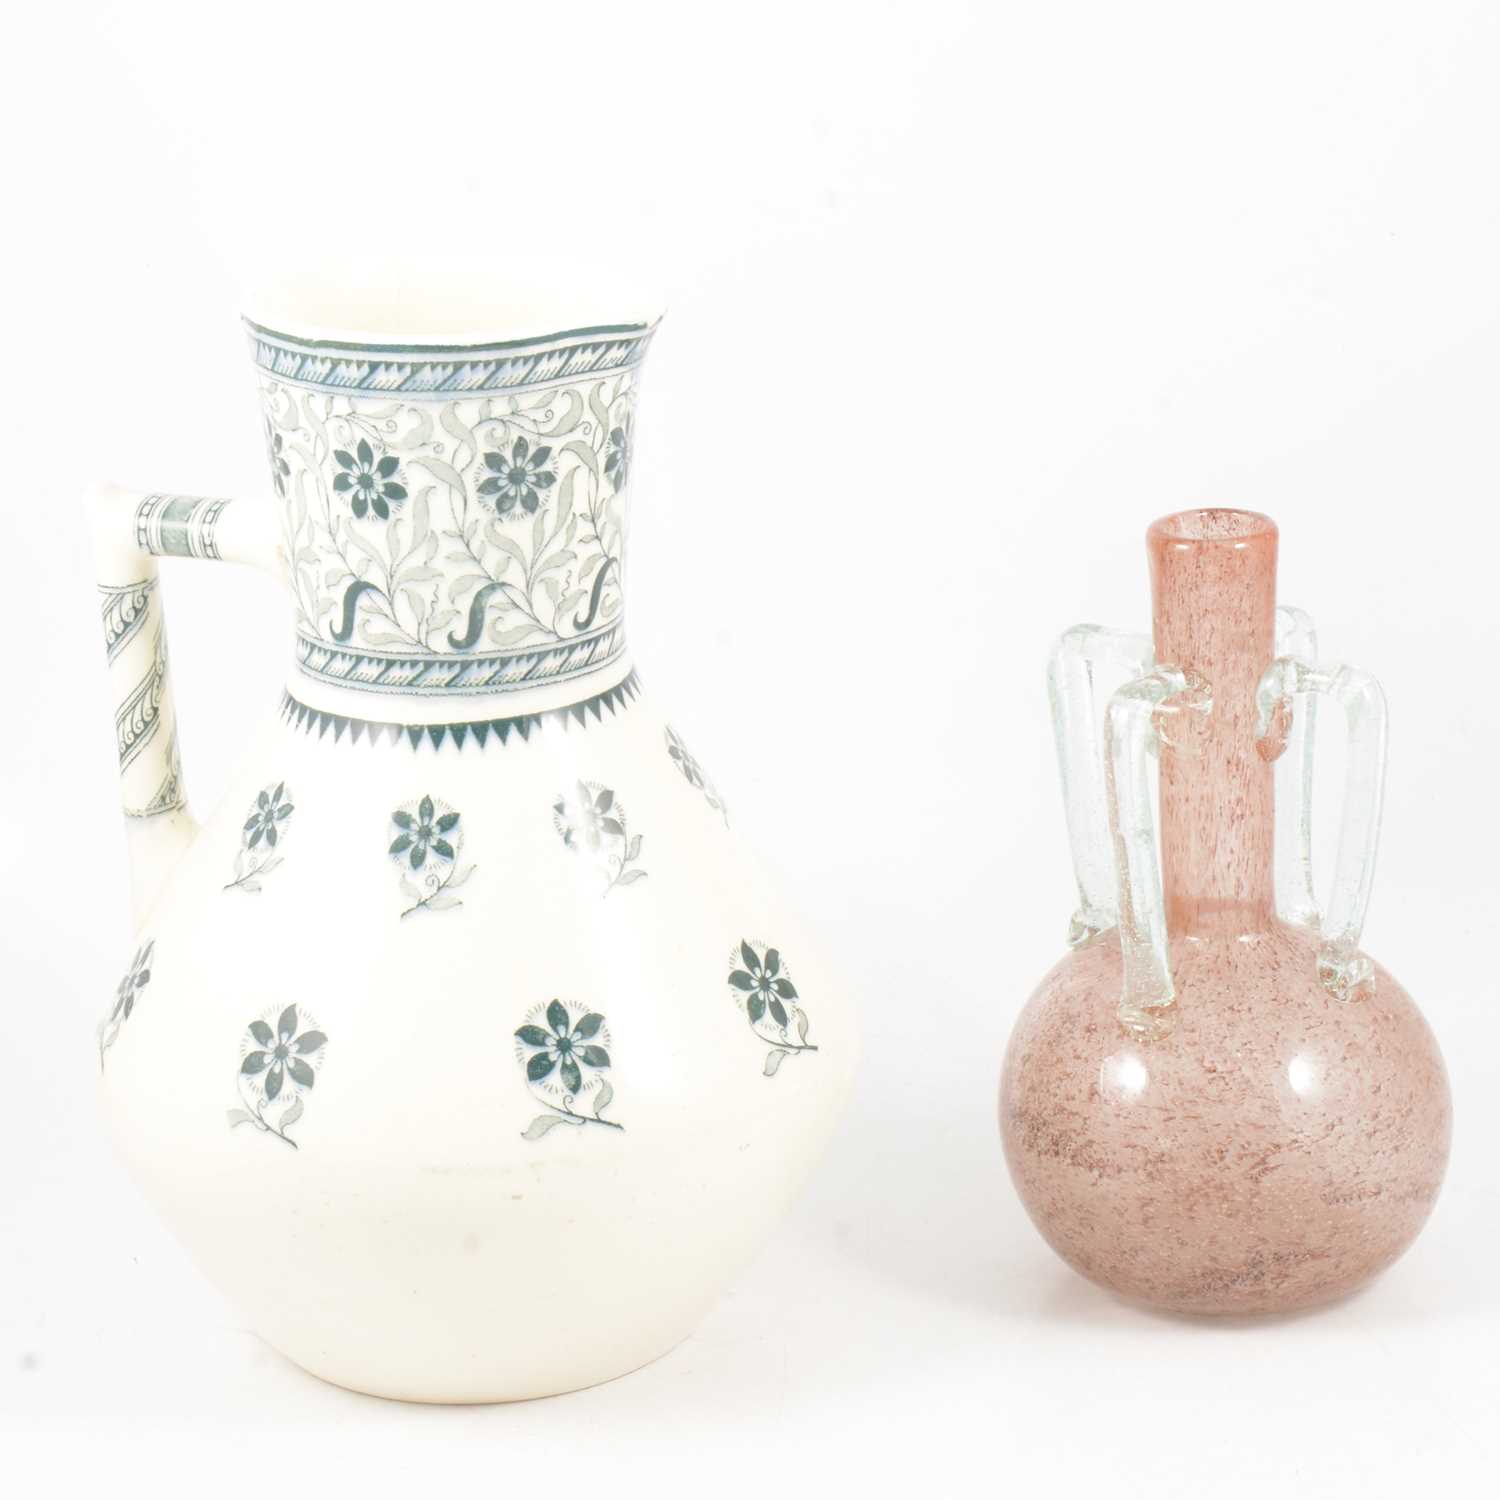 Lot 40 - Christopher Dresser for Minton wash jug, and glass vase